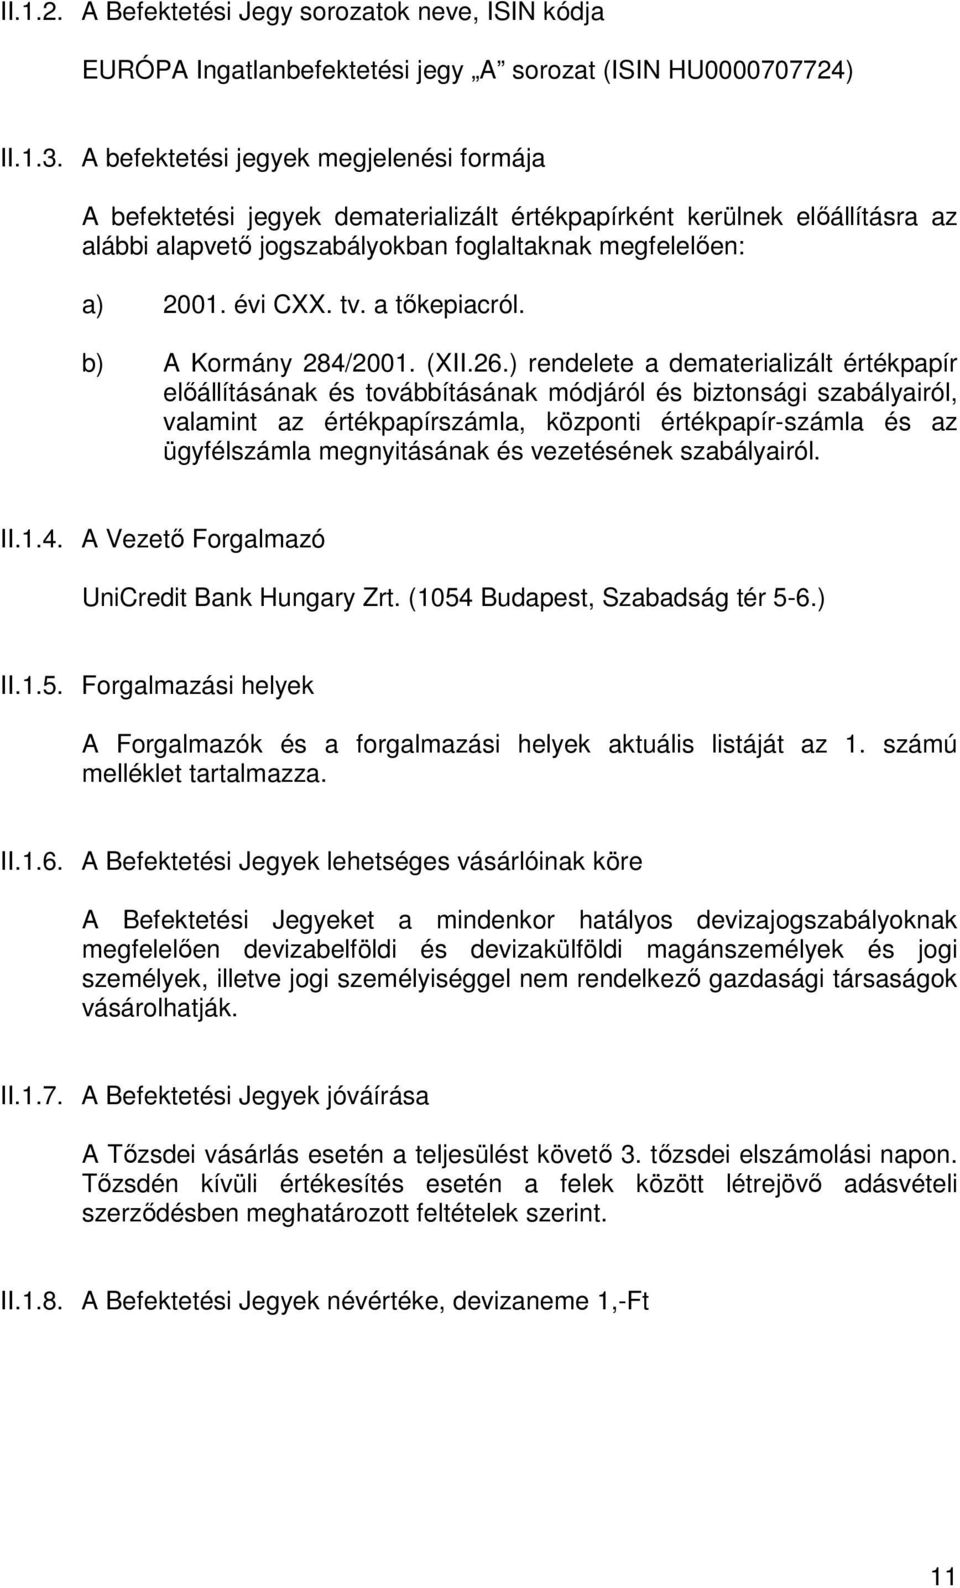 a tıkepiacról. b) A Kormány 284/2001. (XII.26.